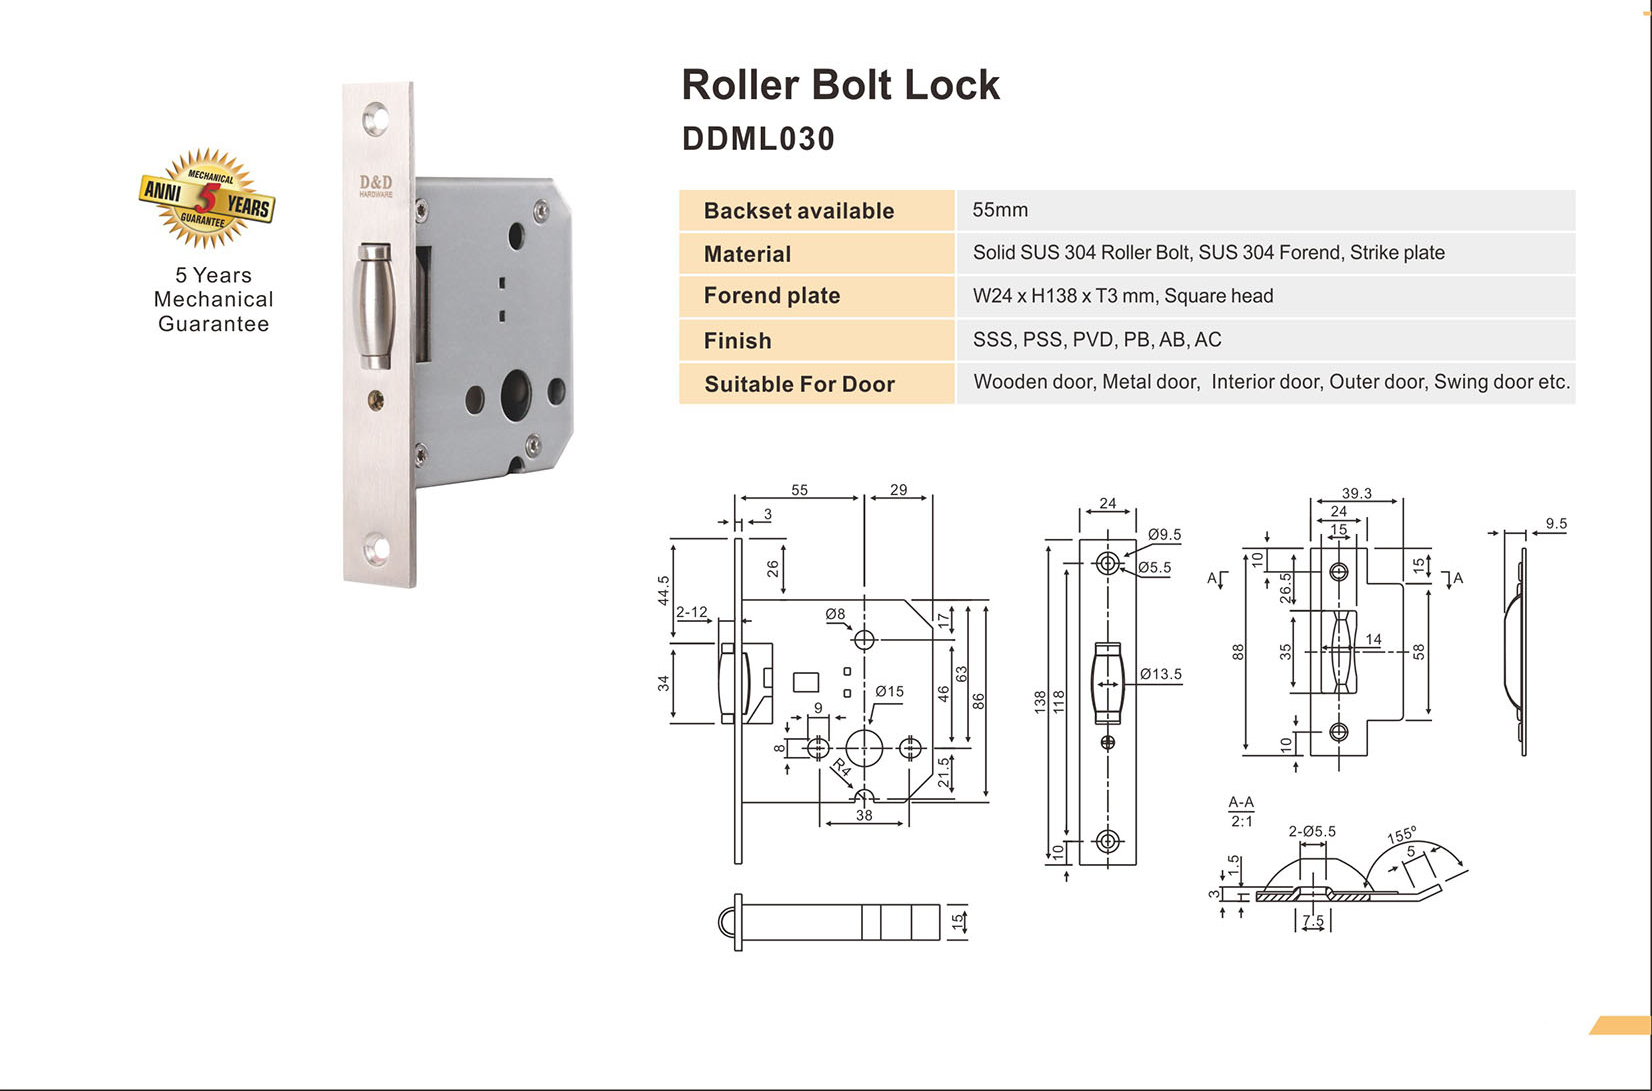 SS Euro roller lock body for Door-DDML030